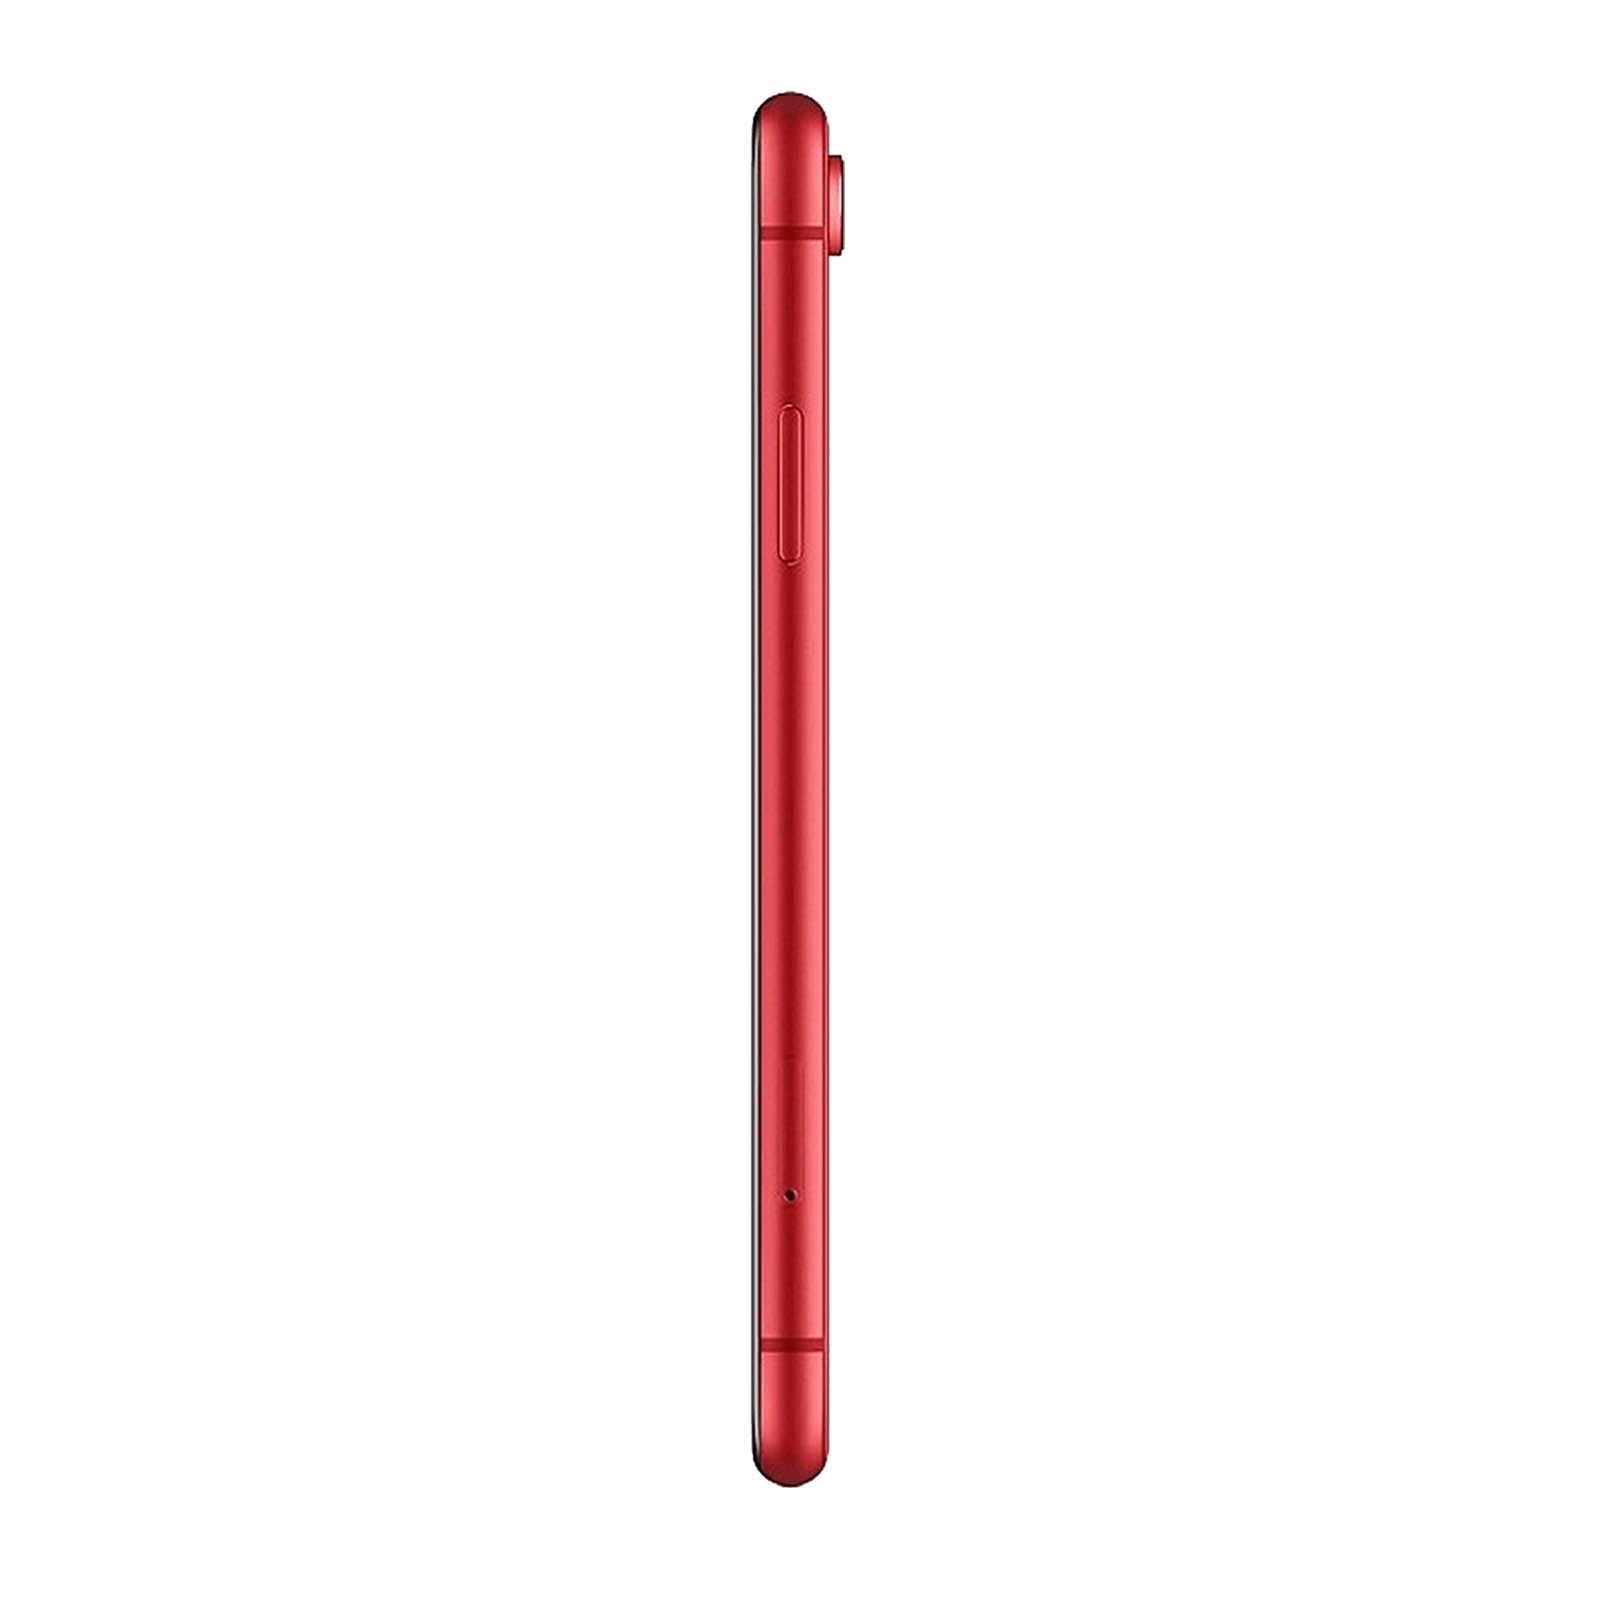 Apple iPhone XR 64GB Rosso Discreto Sbloccato